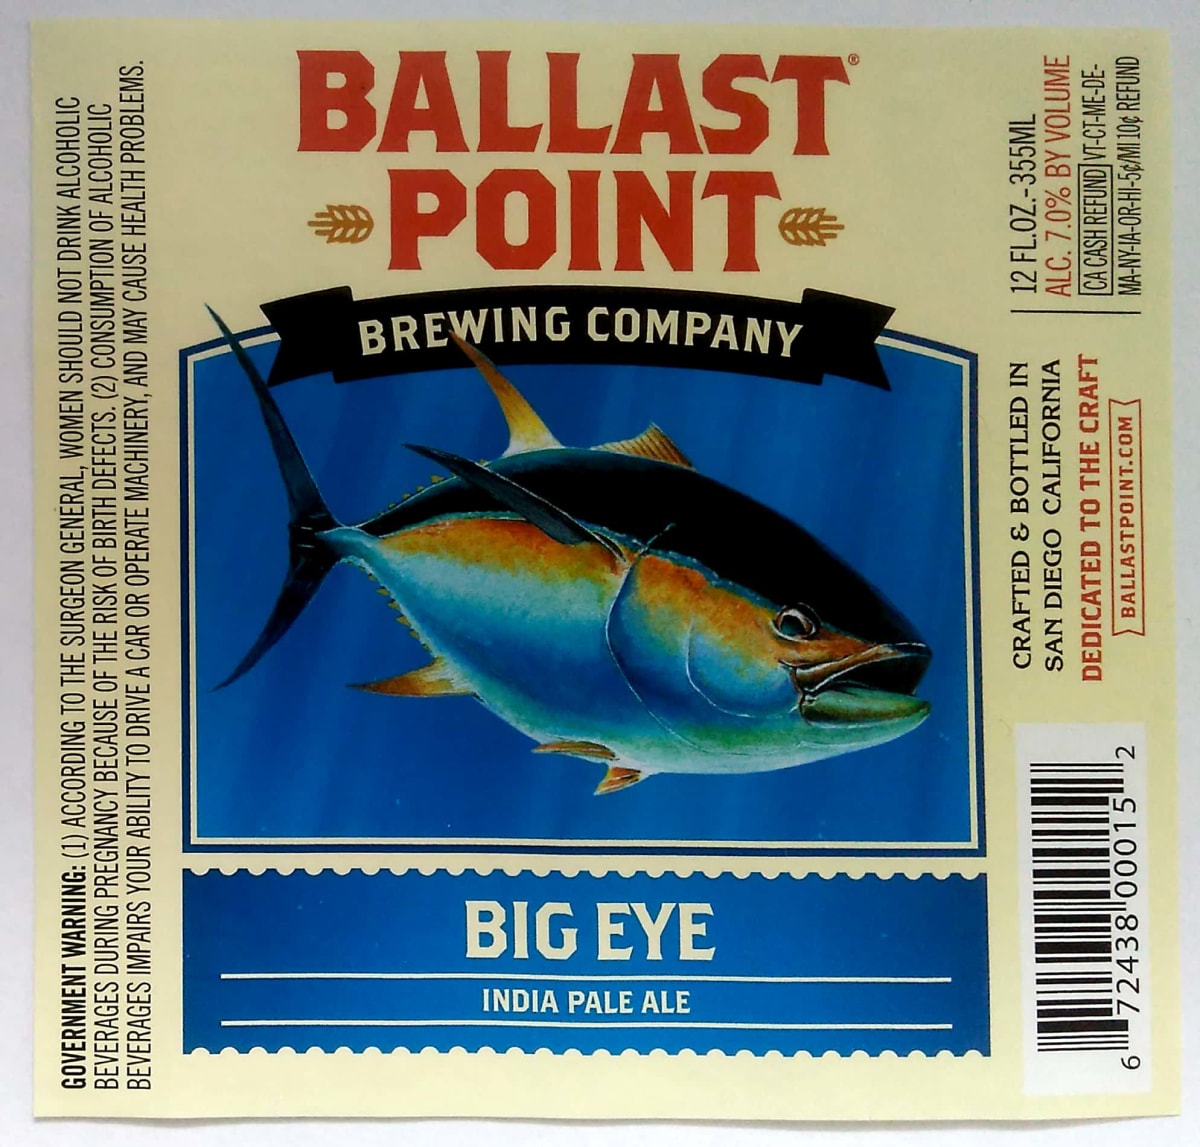 Ballast Point Big Eye IPA